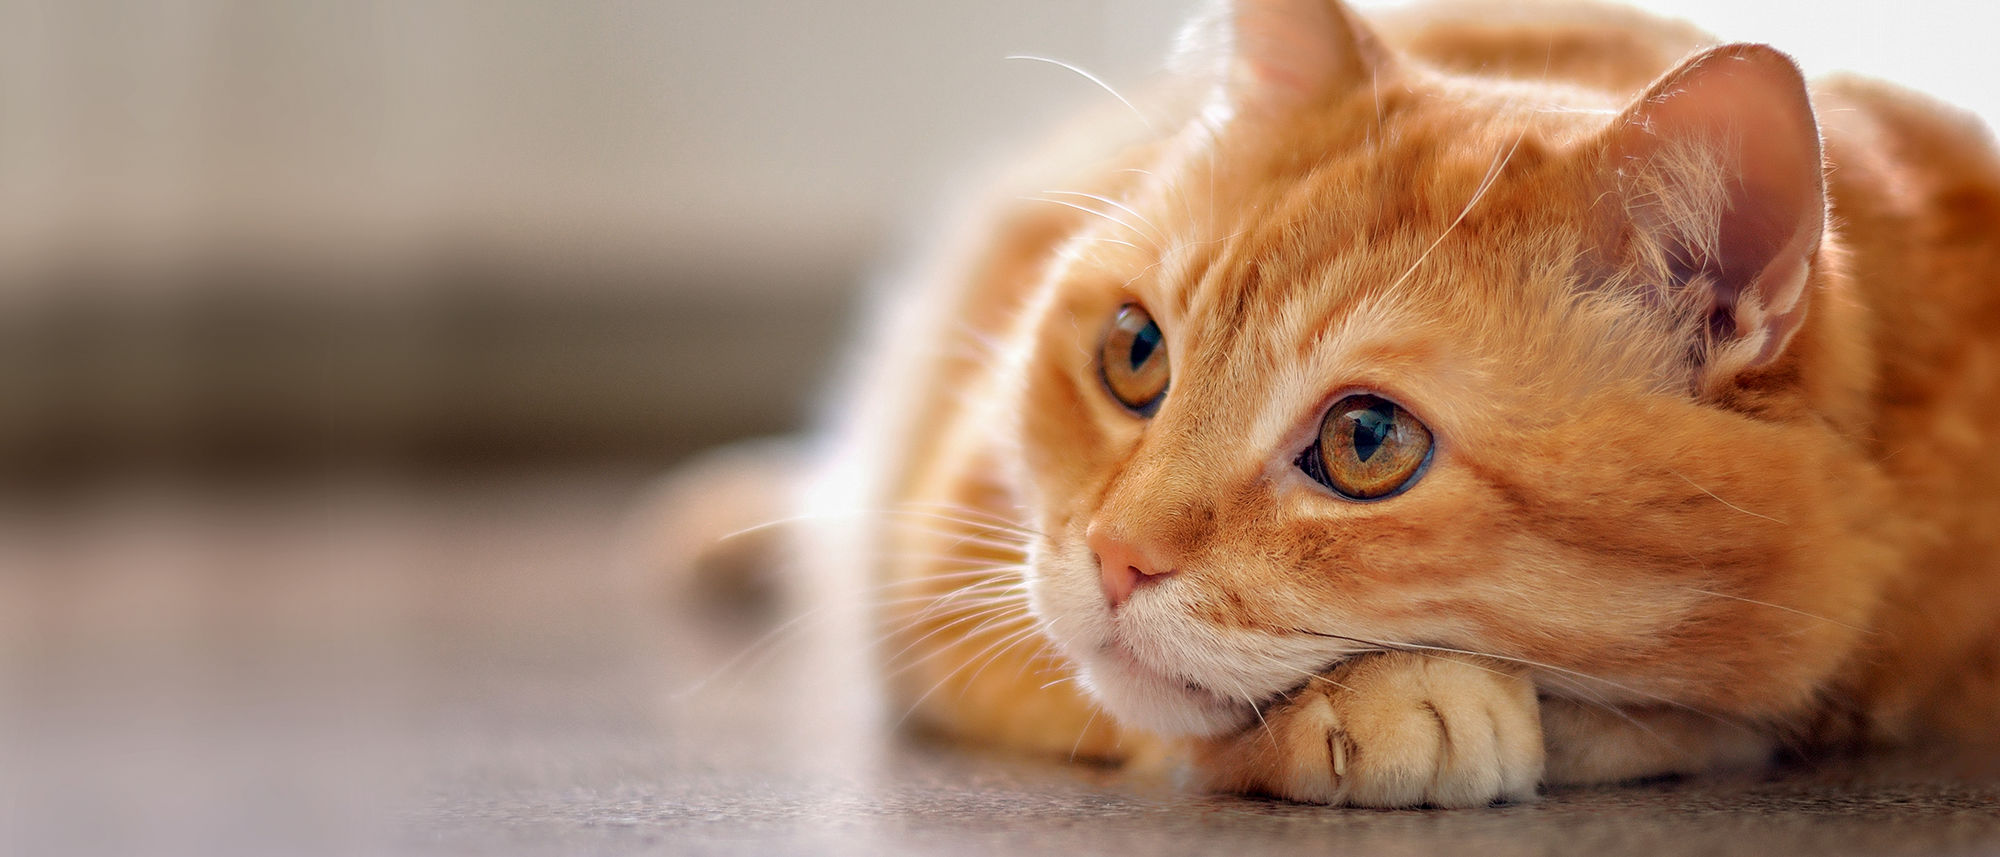 Рвота у кошки - кошку рвет после еды: почему, что делать | Royal Canin